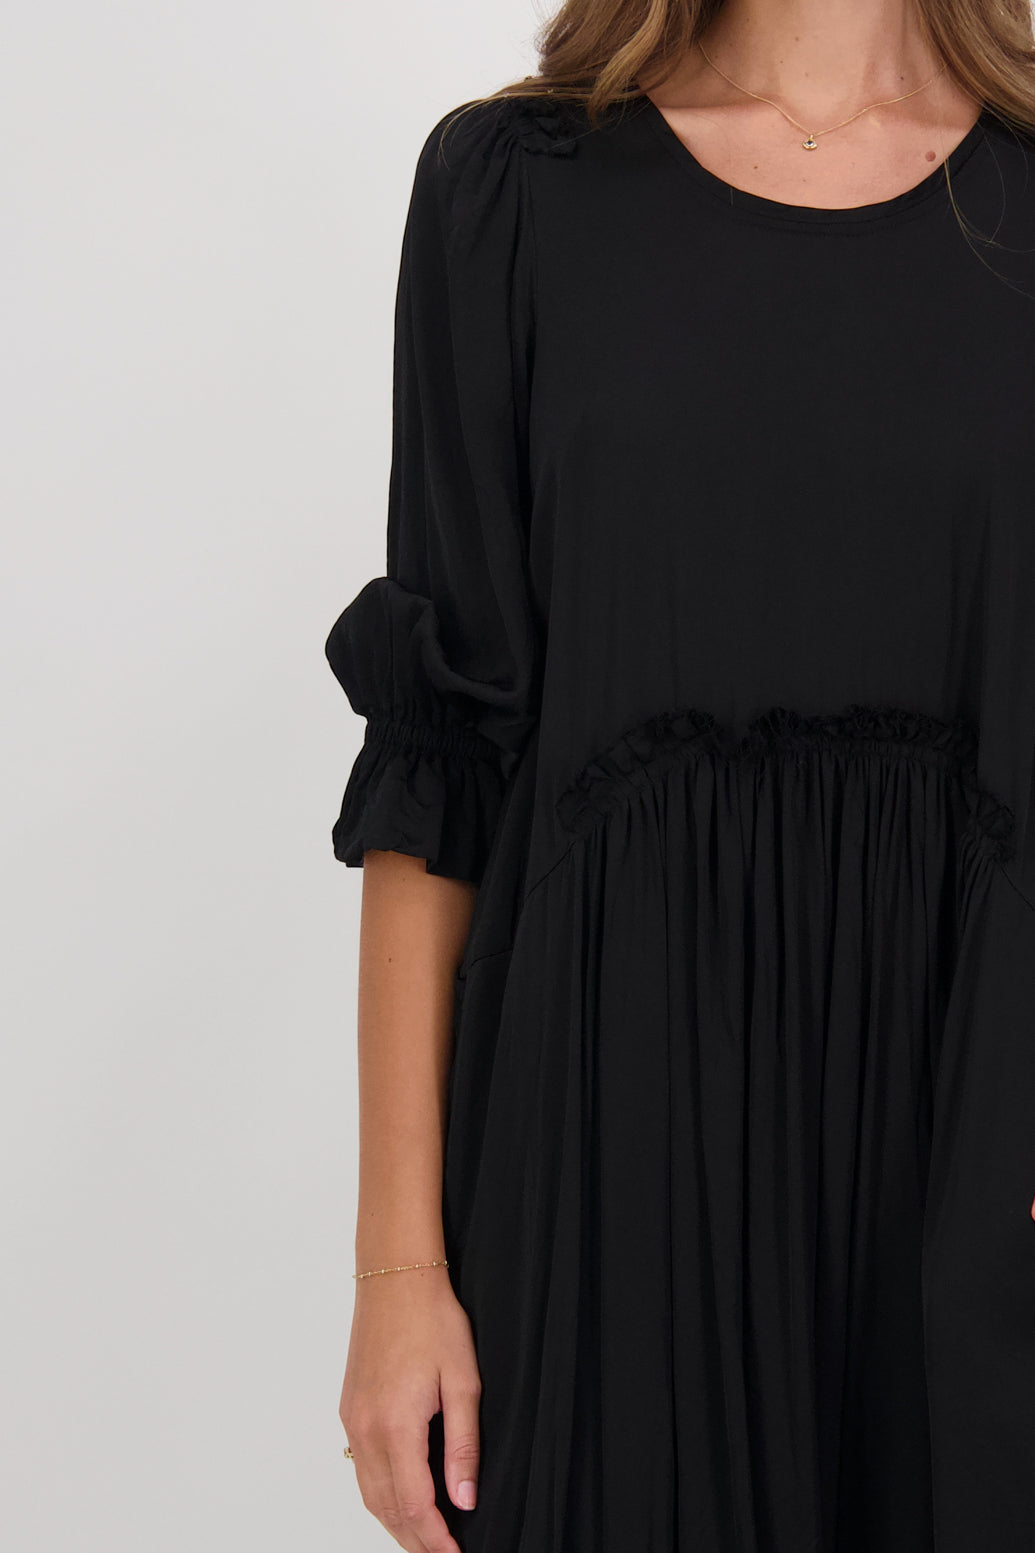 Capri Black Dress